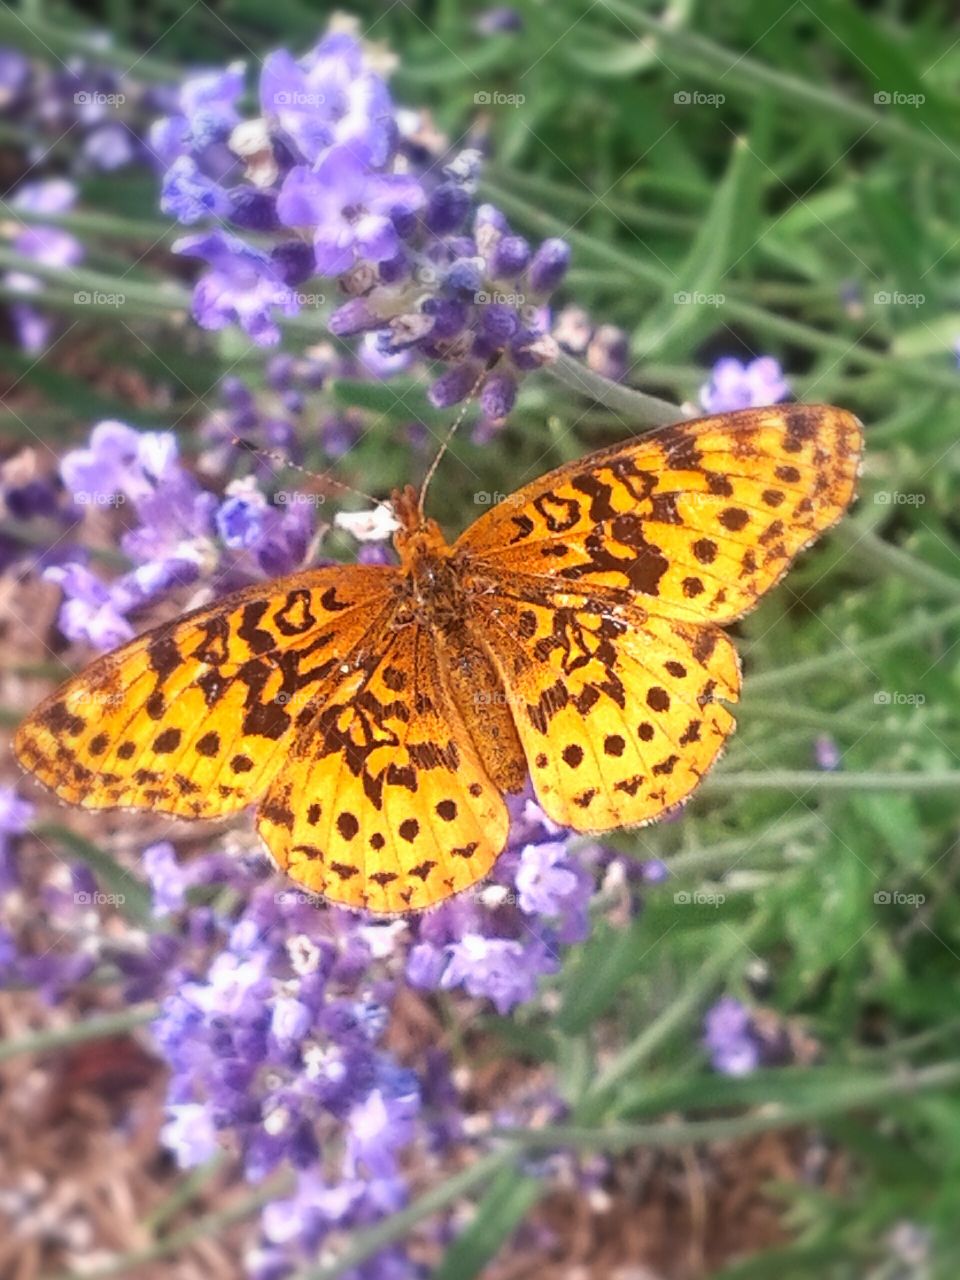 Butterfly. A beauty in the garden.